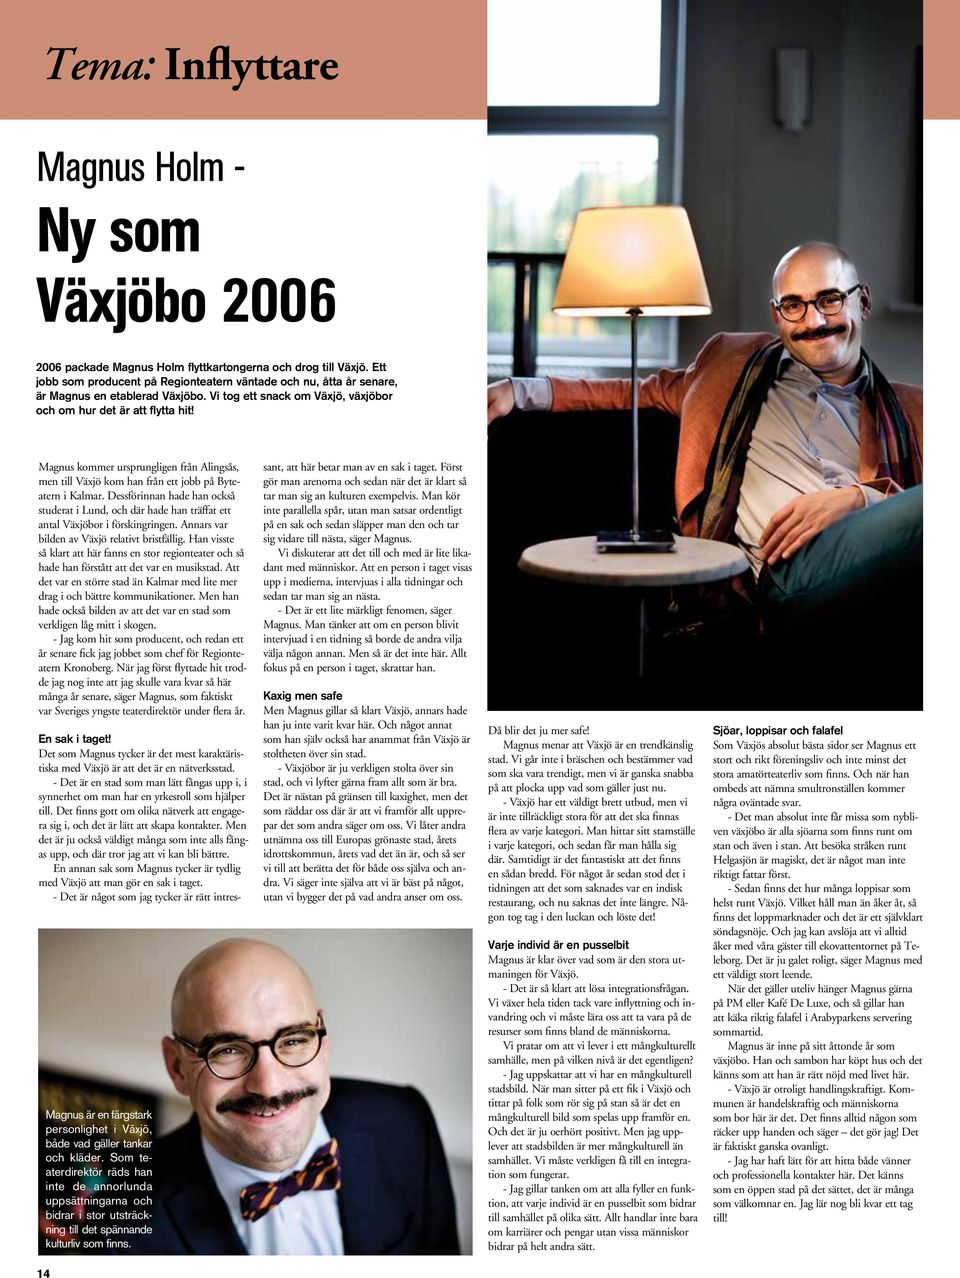 Magnus kommer ursprungligen från Alingsås, men till Växjö kom han från ett jobb på Byteatern i Kalmar.